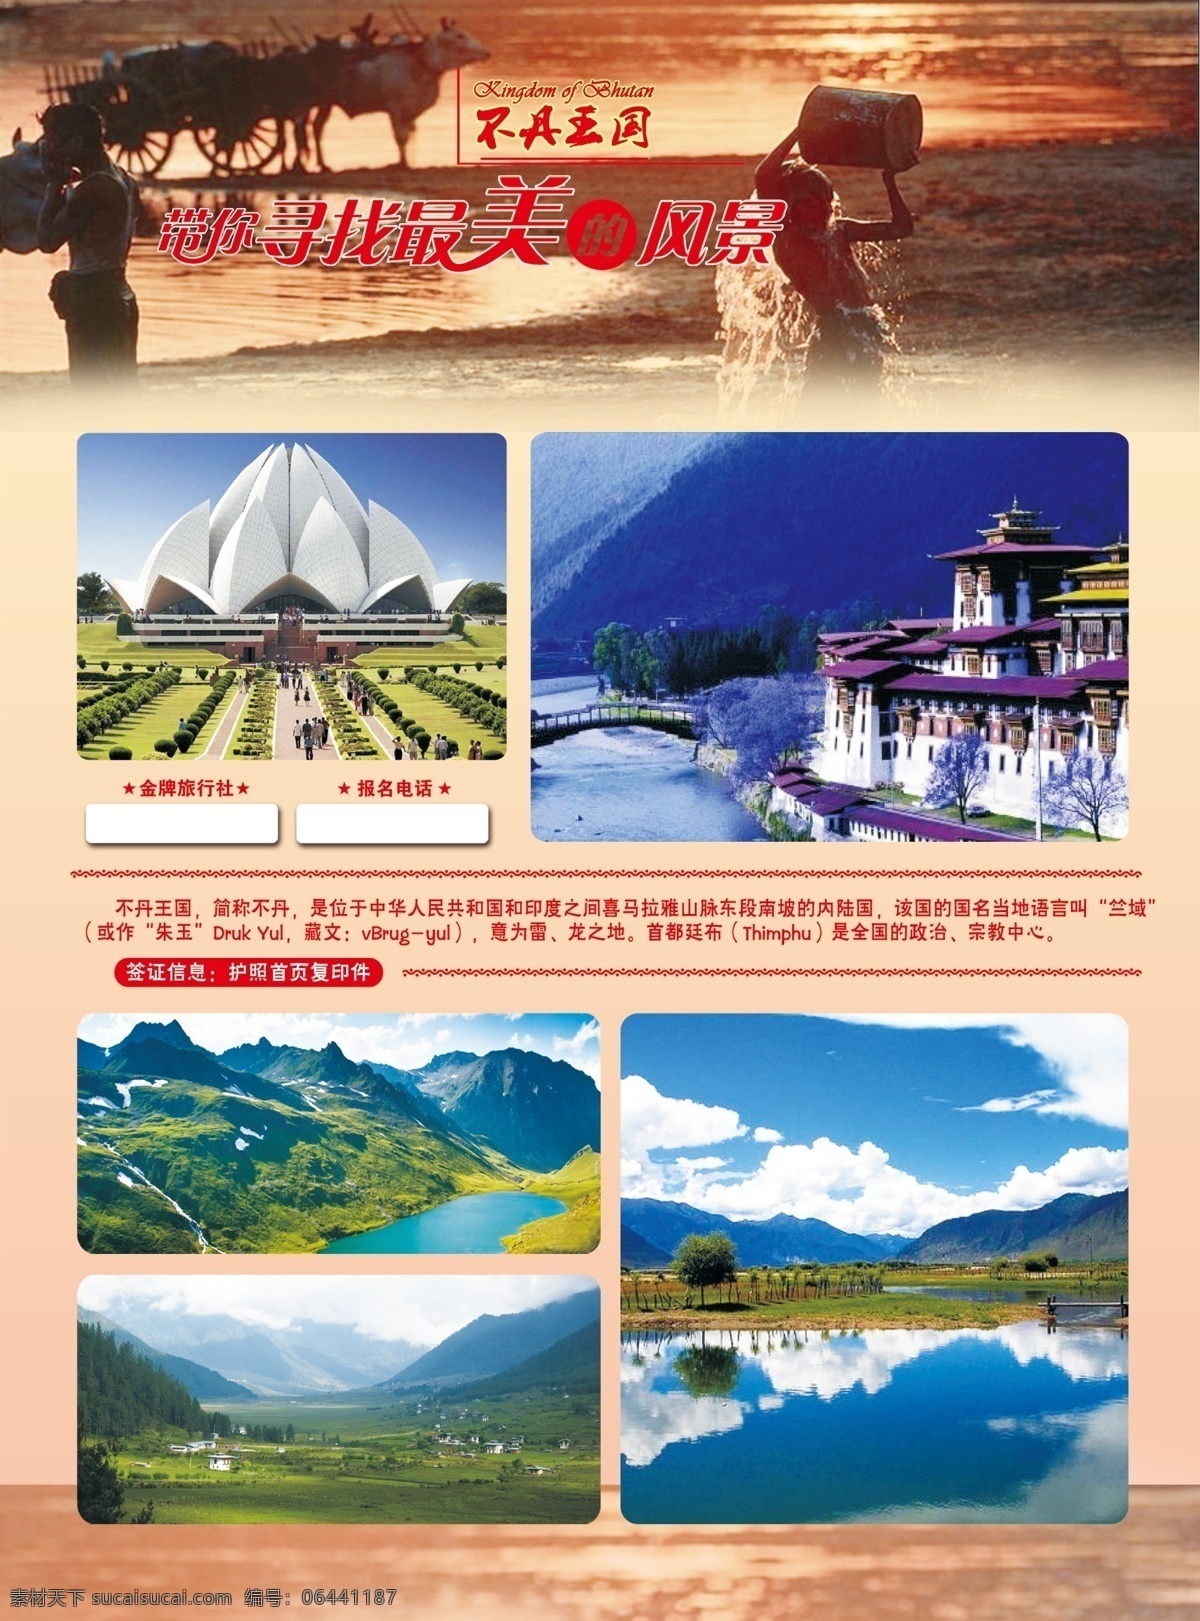 不丹 旅游 宣传单 300分辨率 psd源文件 风景 红色 山水 寻找 最美 不丹王国 原创设计 其他原创设计